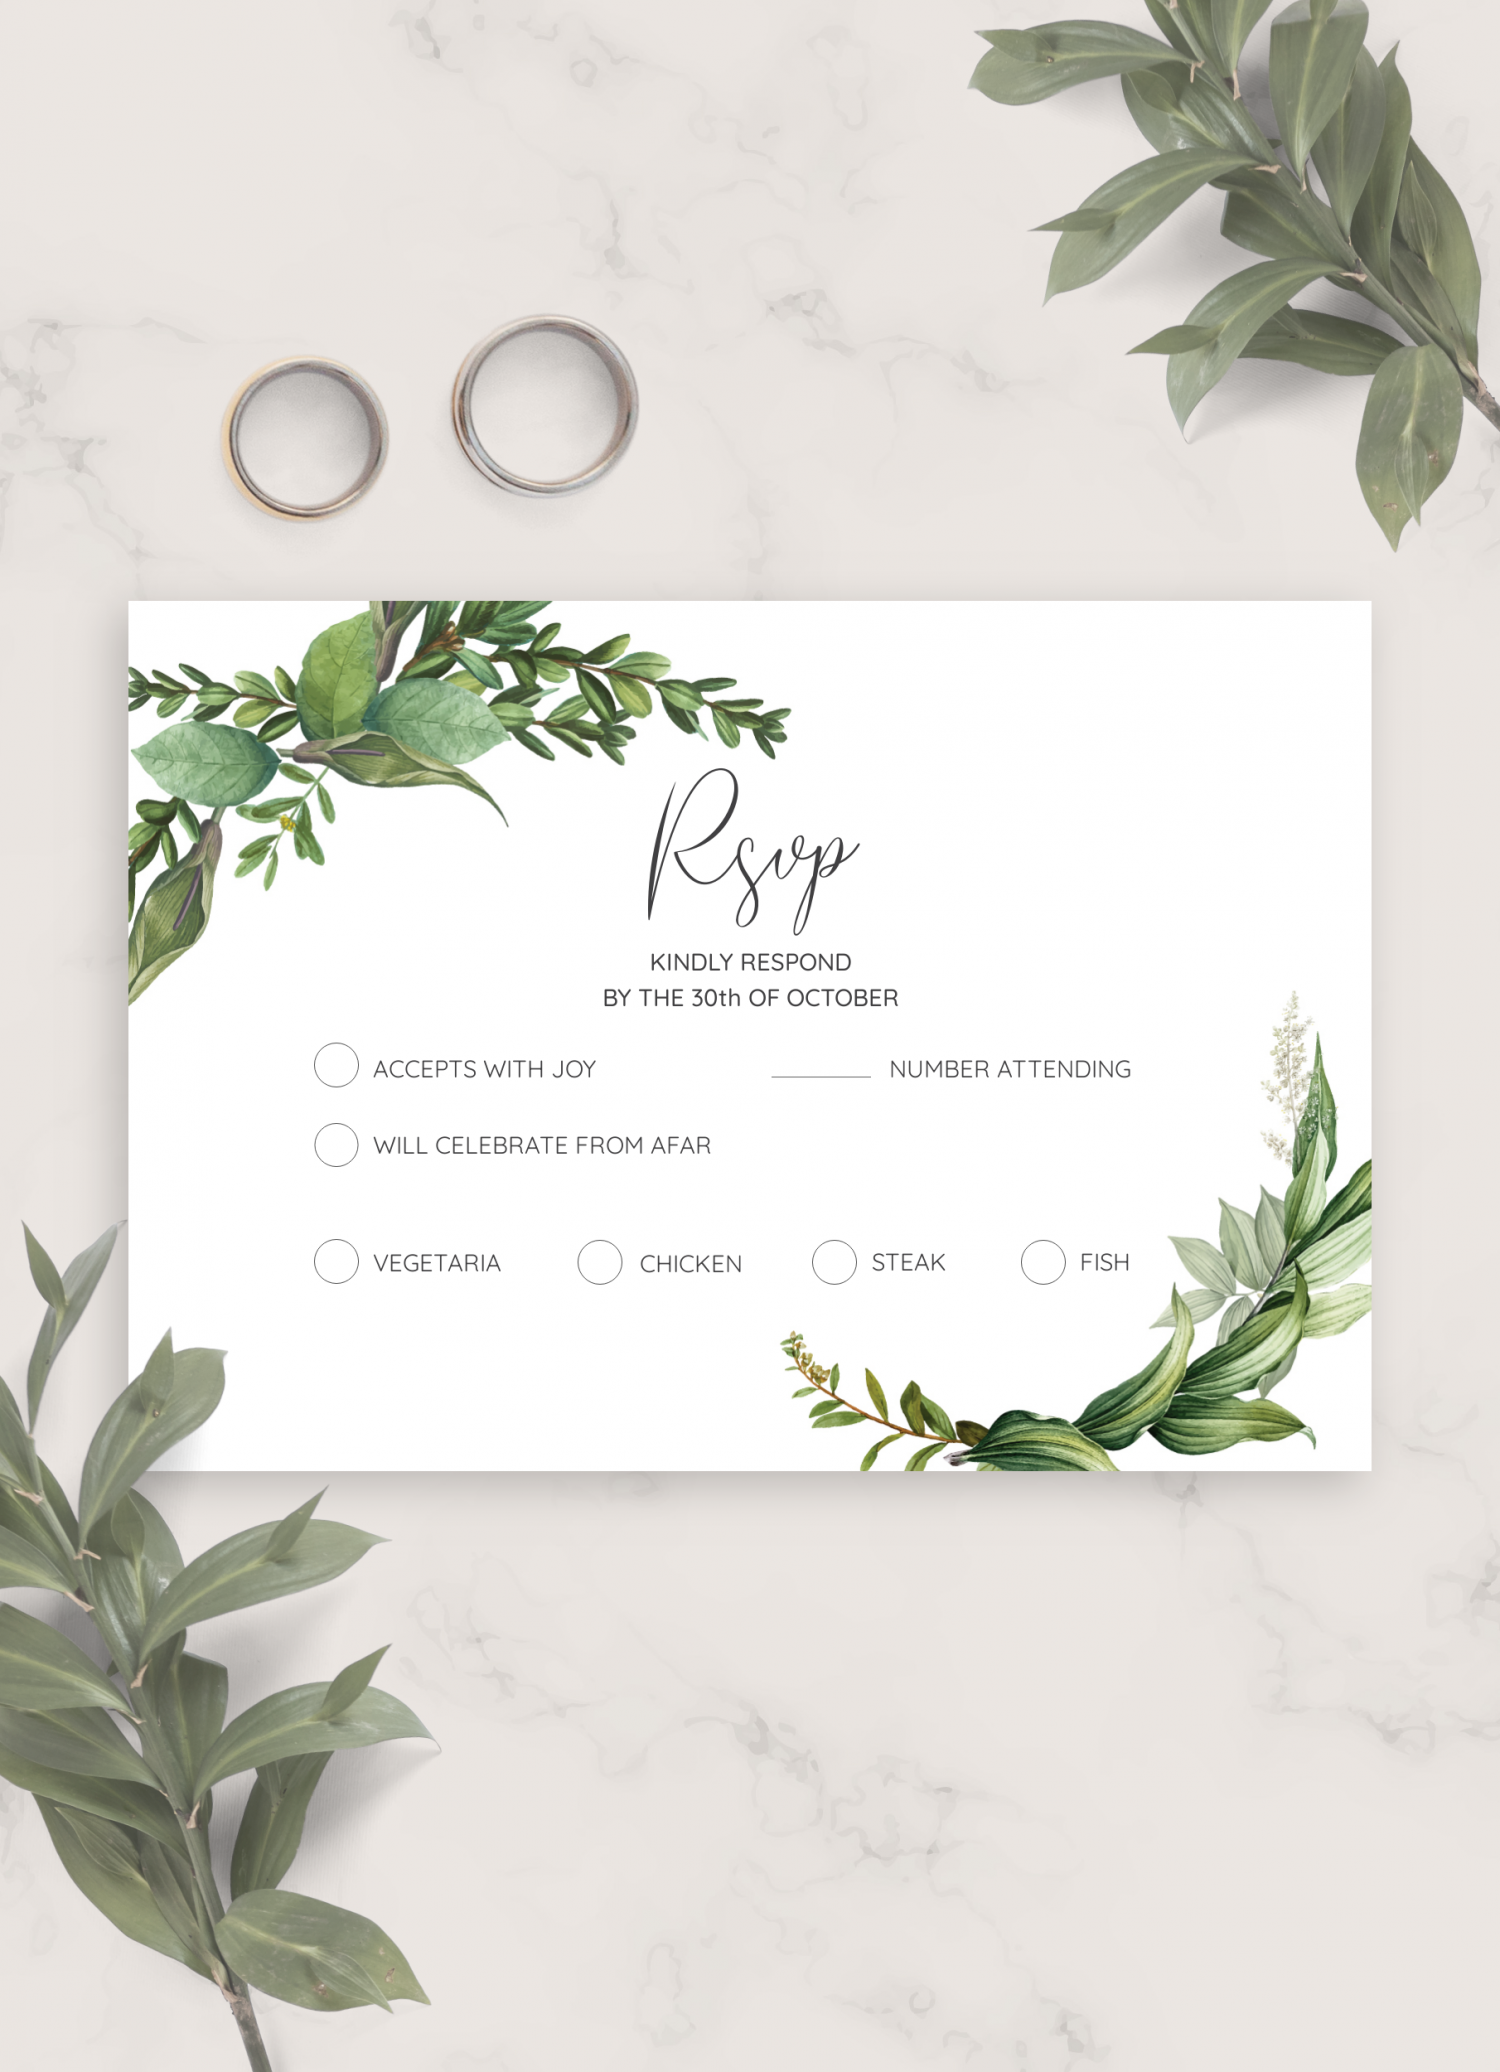 Download Printable Green Floral Wedding RSVP Card PDF For Free Printable Wedding Rsvp Card Templates